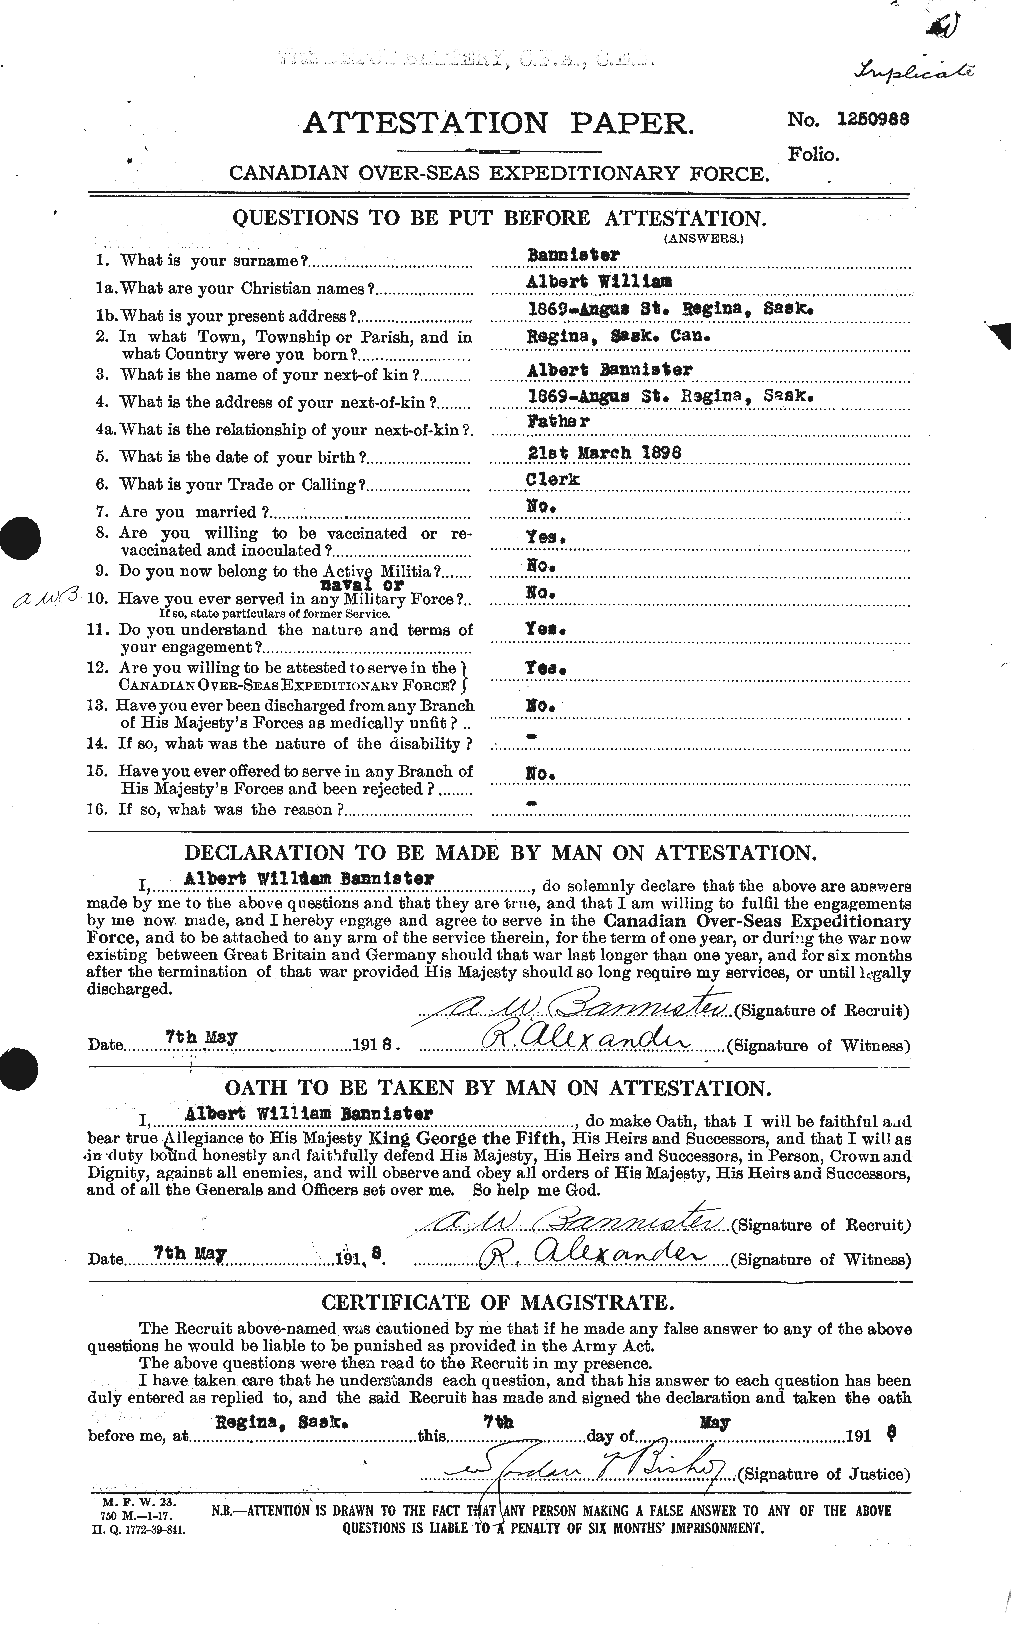 Dossiers du Personnel de la Première Guerre mondiale - CEC 224814a